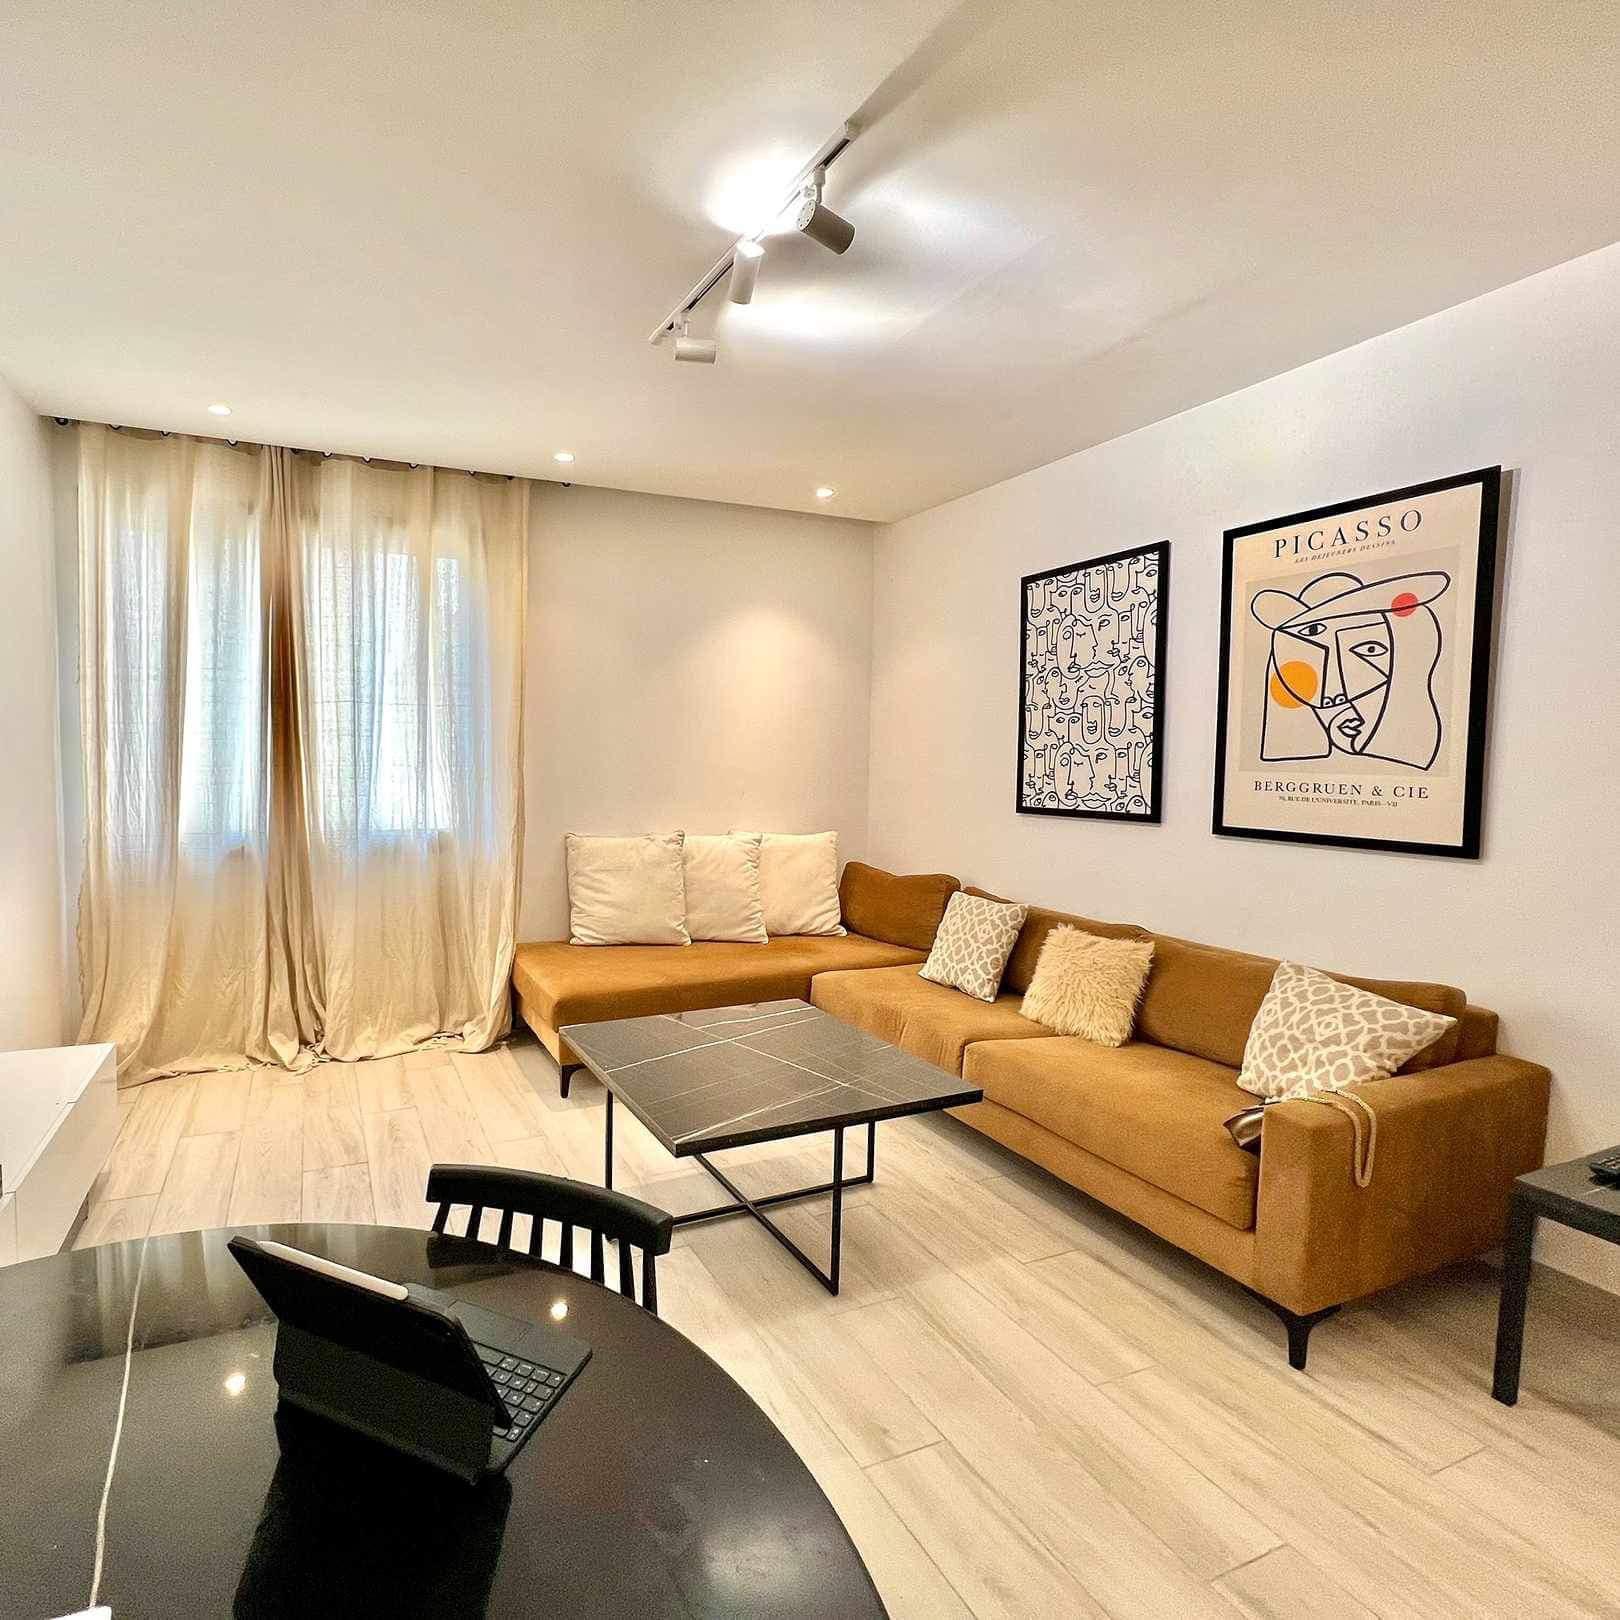 Un magnifique appartement S+2 meublé dans une résidence calme et sécurisée à La Marsa